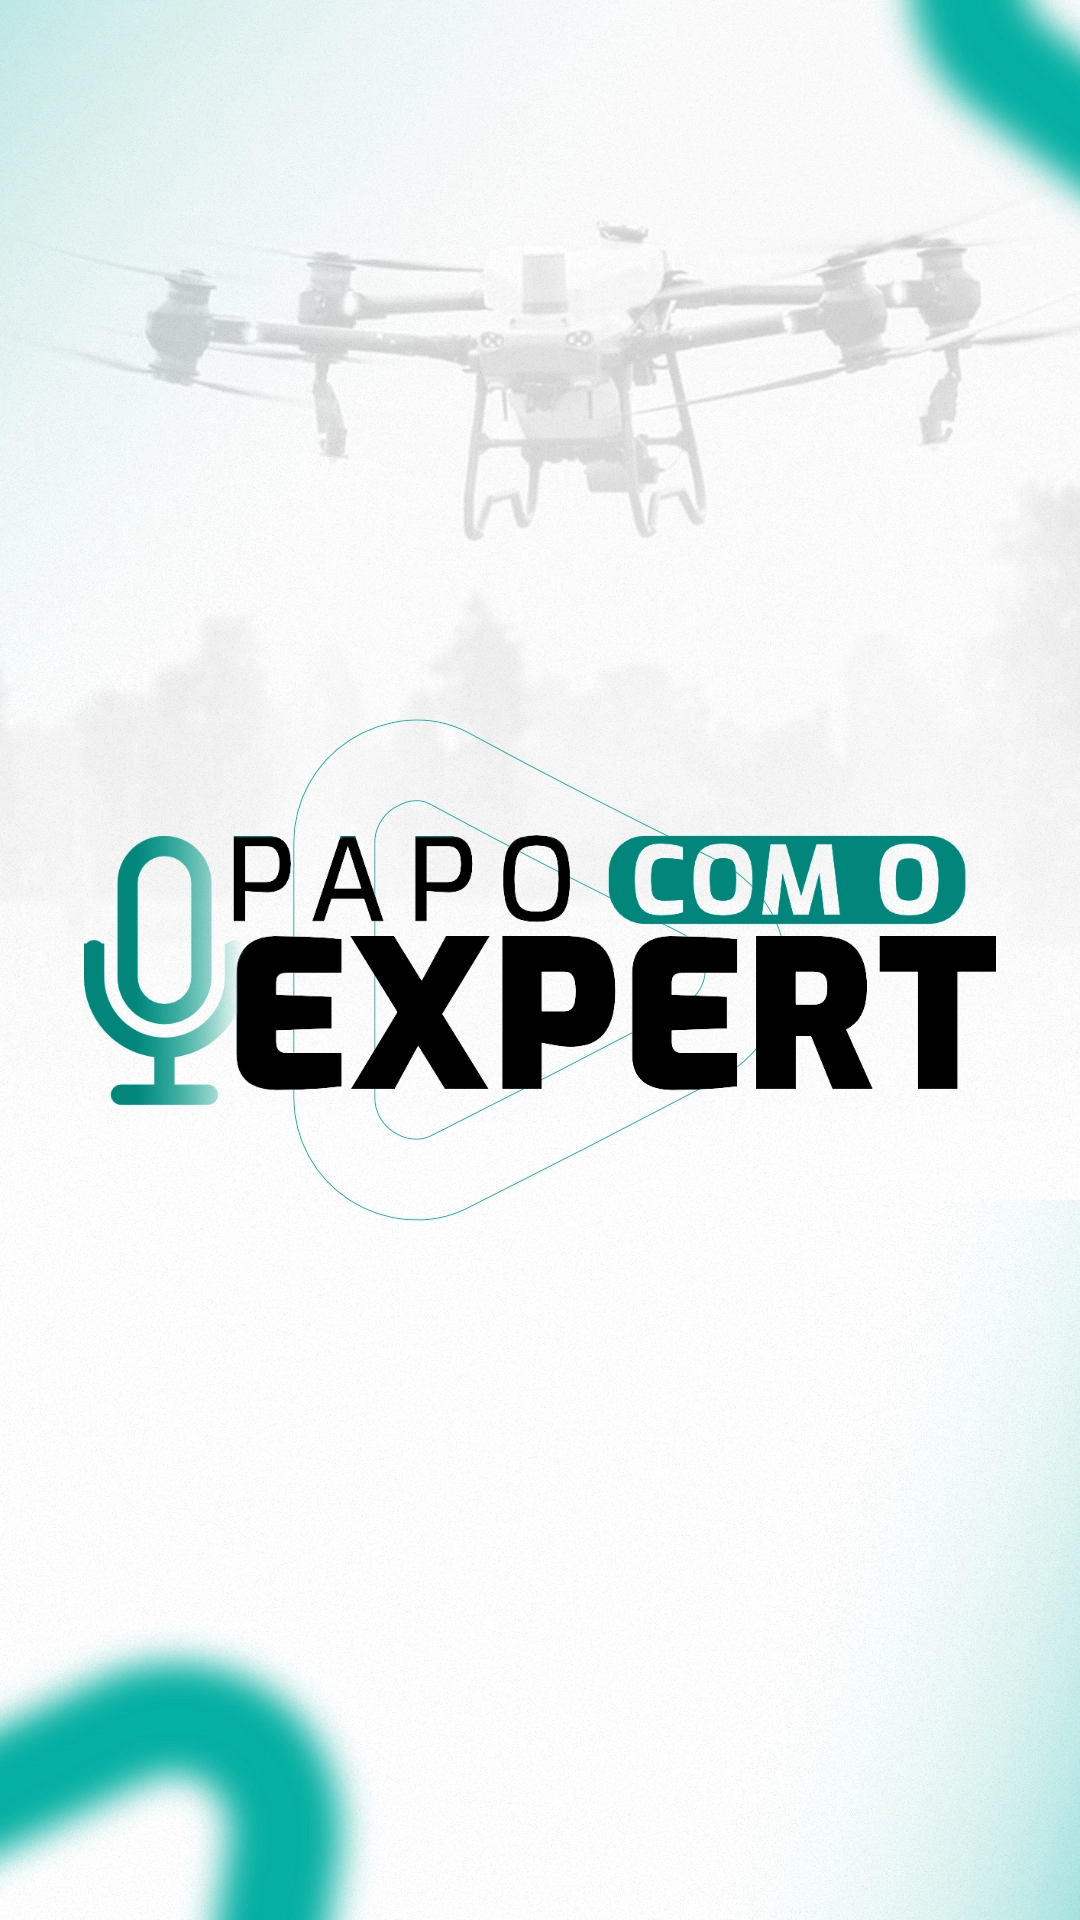 PAPO COM O EXPERT